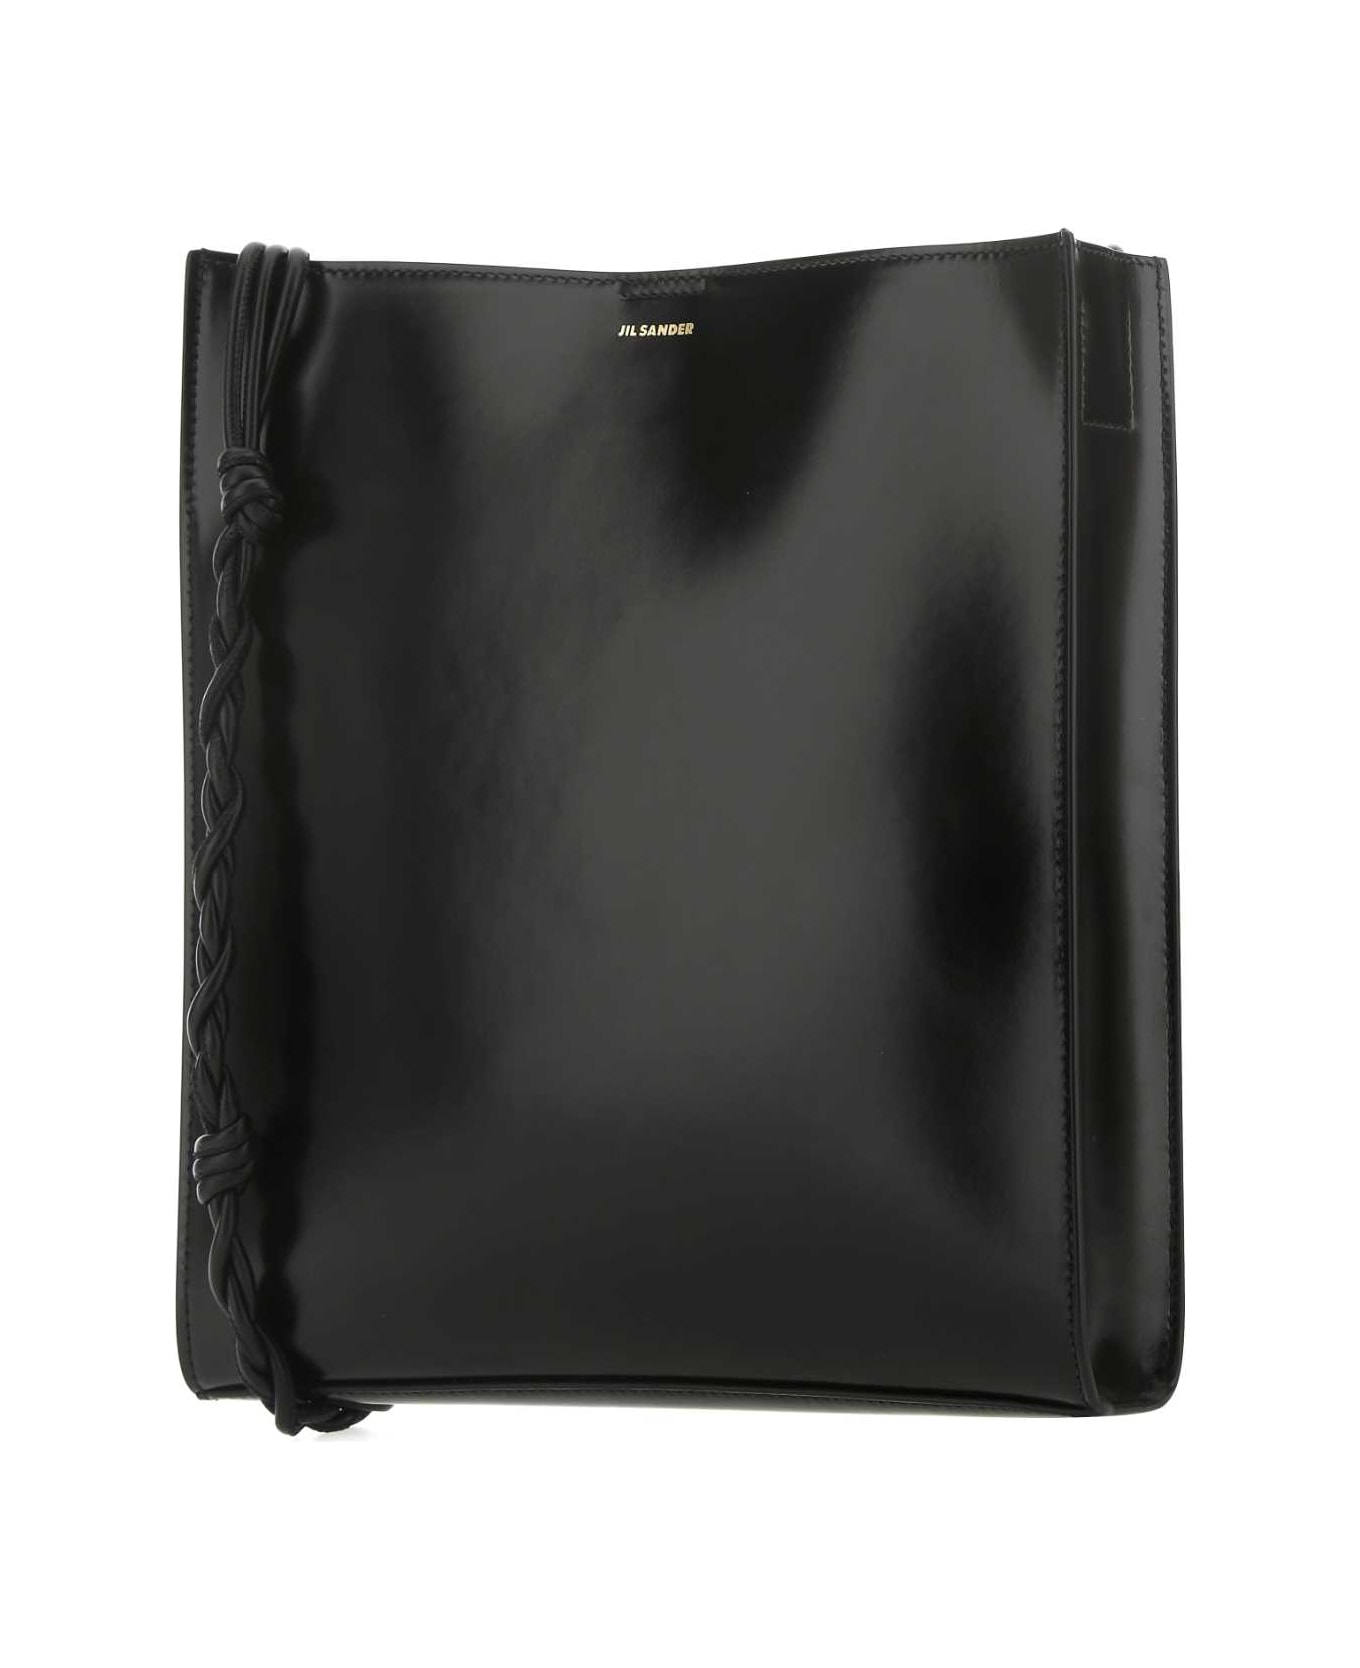 Jil Sander Black Leather Large Tangle Shoulder Bag - 001 ショルダーバッグ